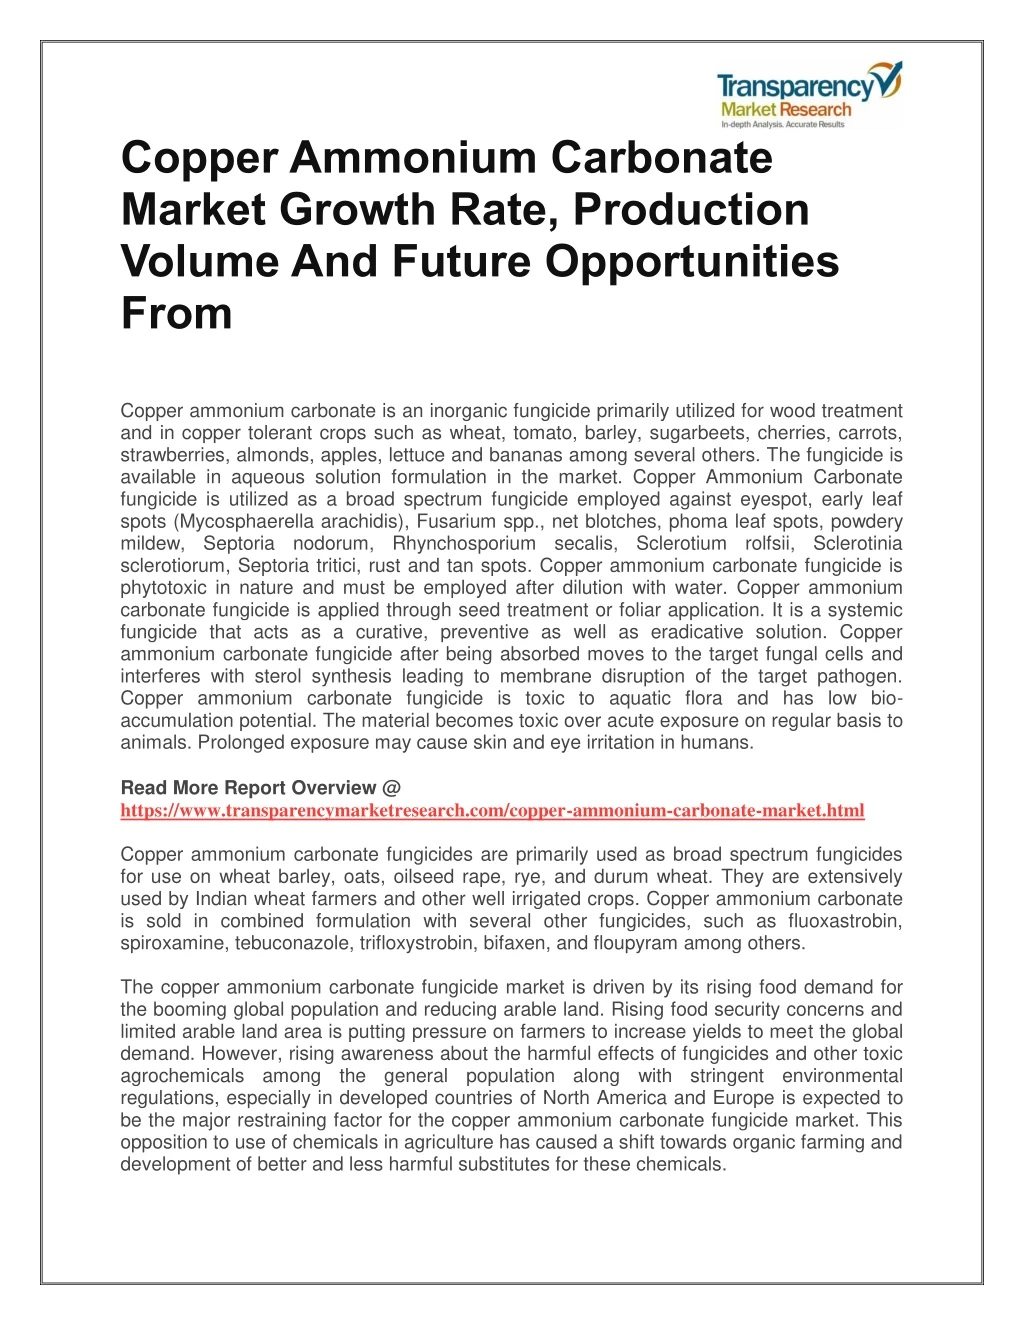 copper ammonium carbonate market growth rate